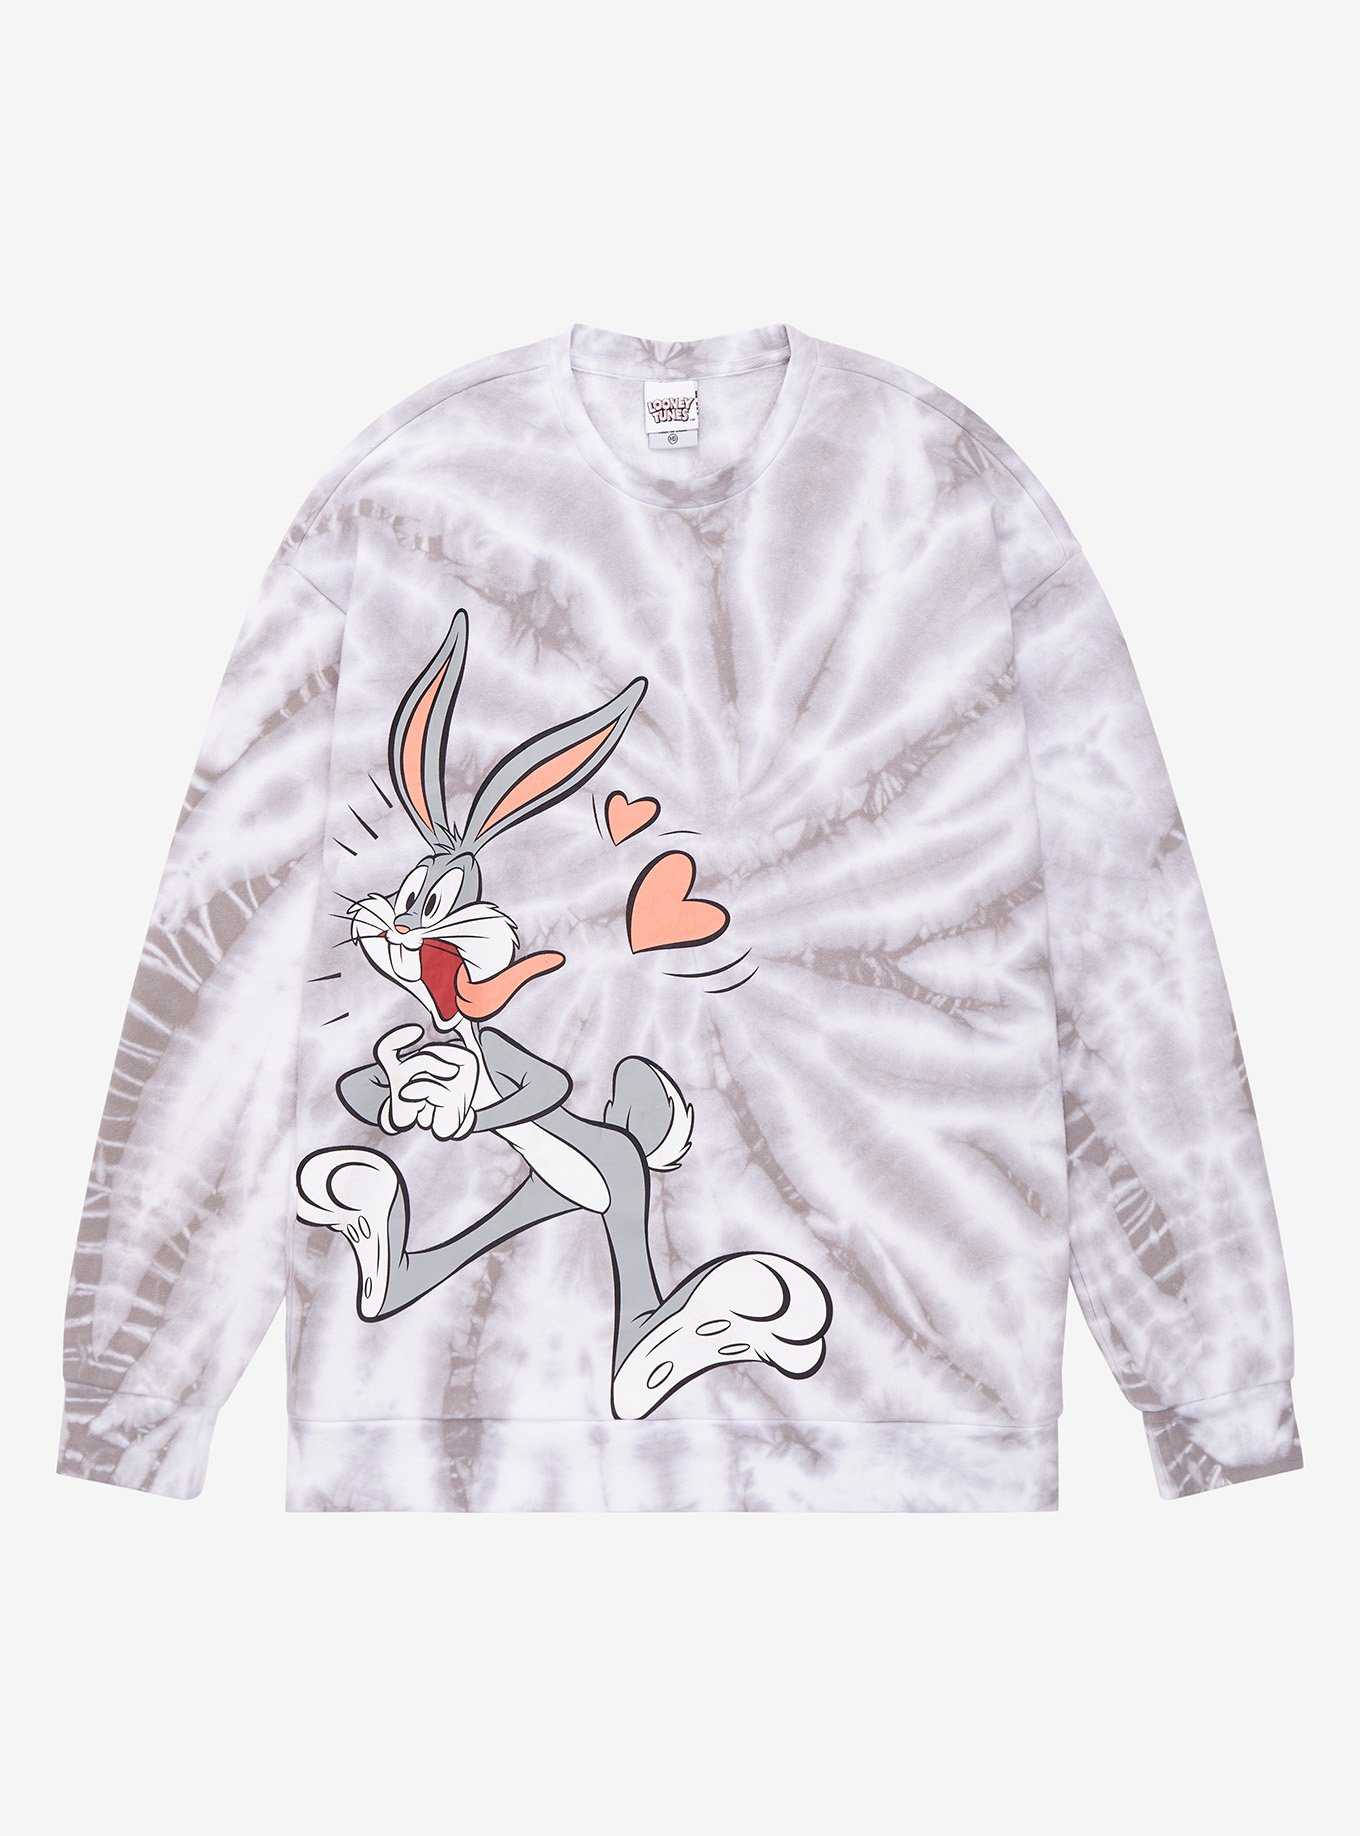 Looney Tunes Bugs Bunny Tie-Dye Crewneck - BoxLunch Exclusive, , hi-res